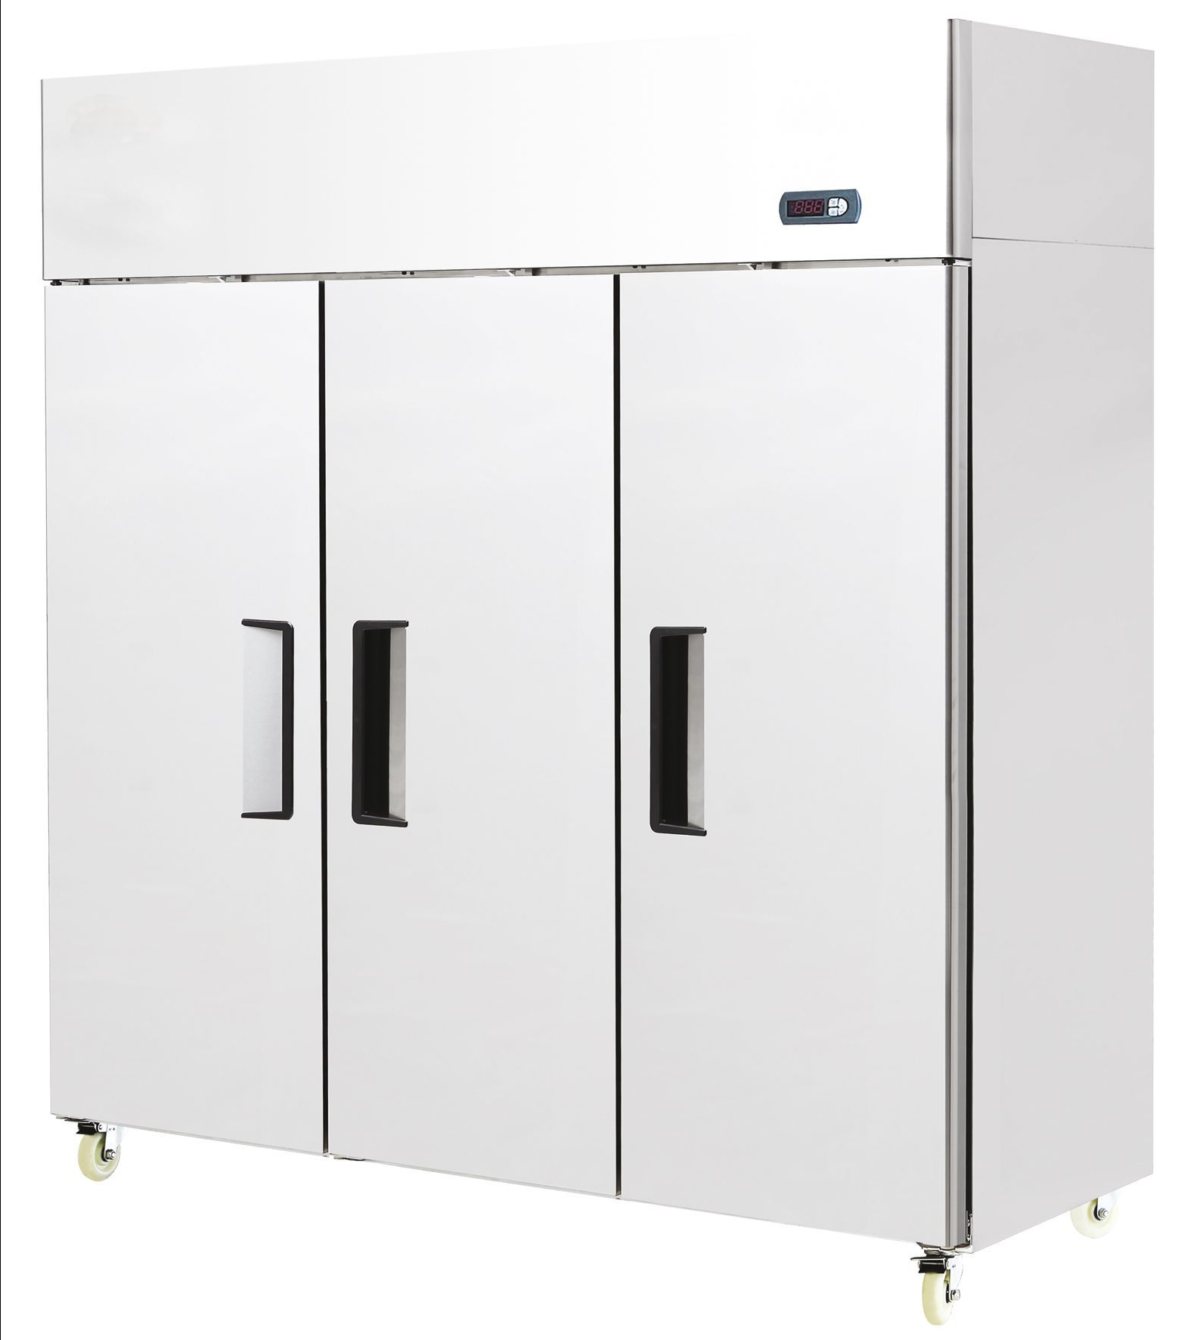 1390 Litre Stainless Steel Triple Door Upright Freezer – YBF9242